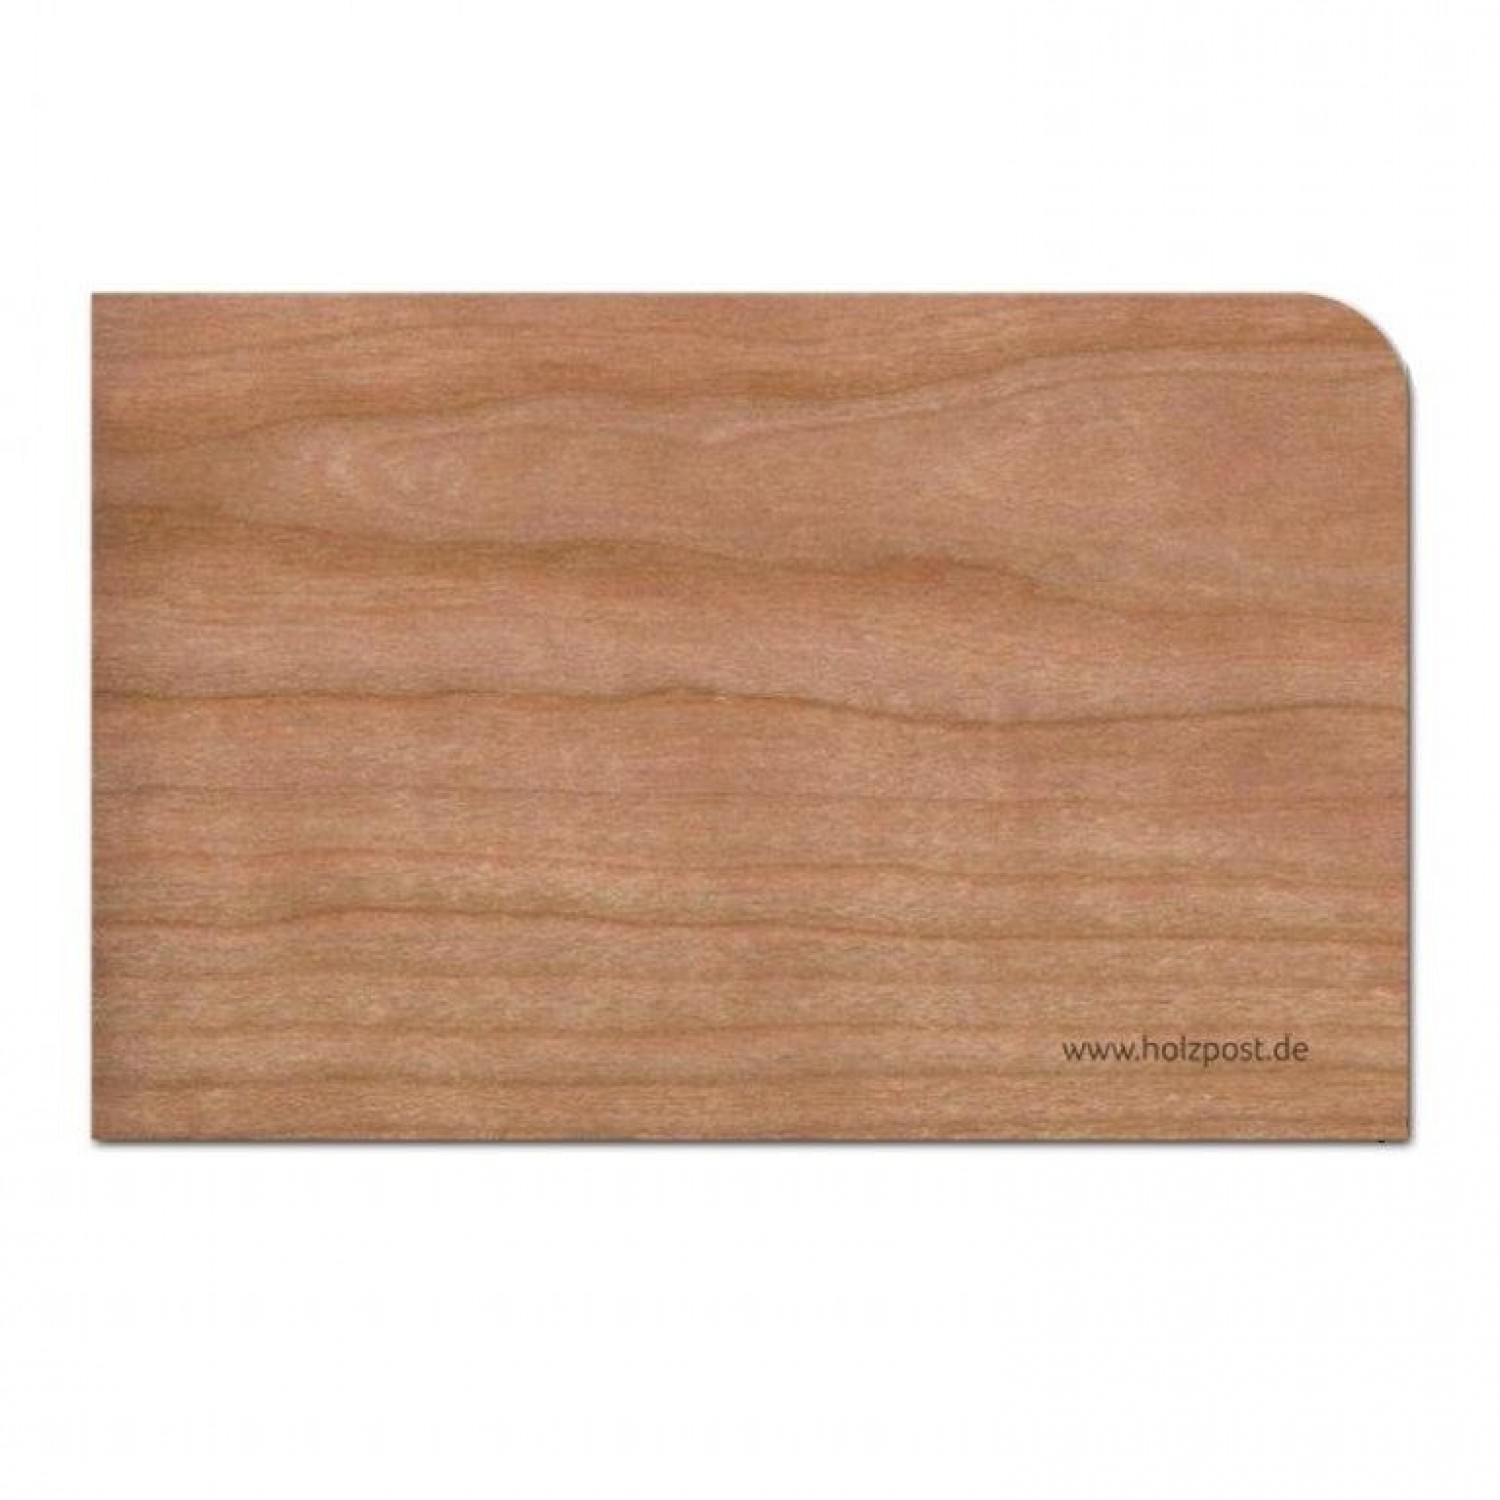 Holzpost Grußkarte "Blanko" aus Kirschholz inkl. Umschlag